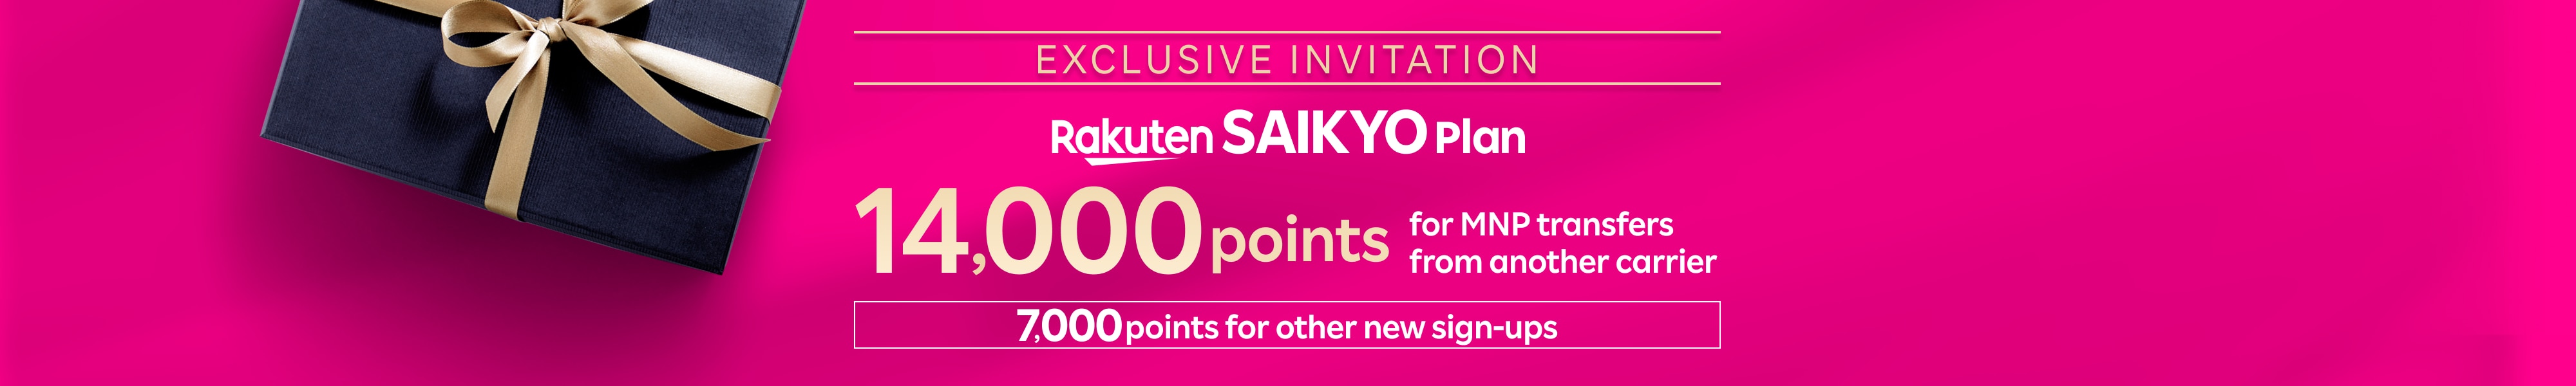 Exclusive invitation to Rakuten SAIKYO Plan